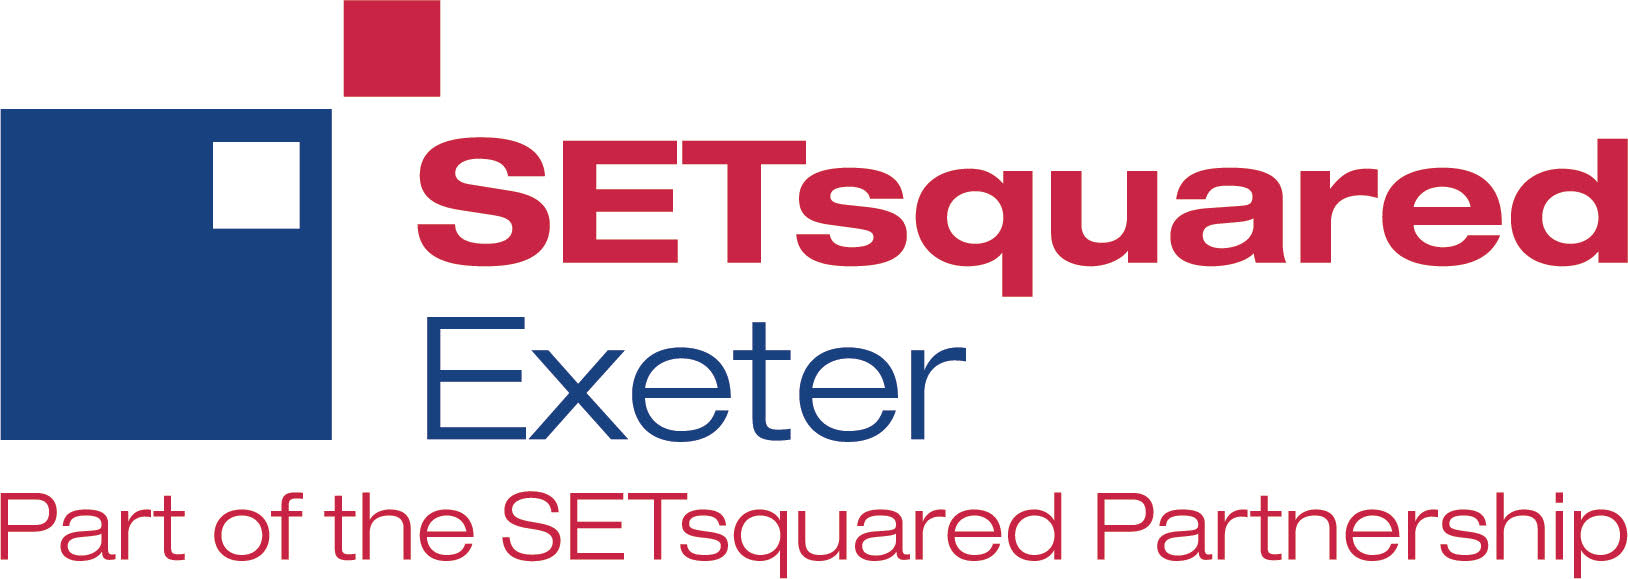 SETSquared Exeter accreditation